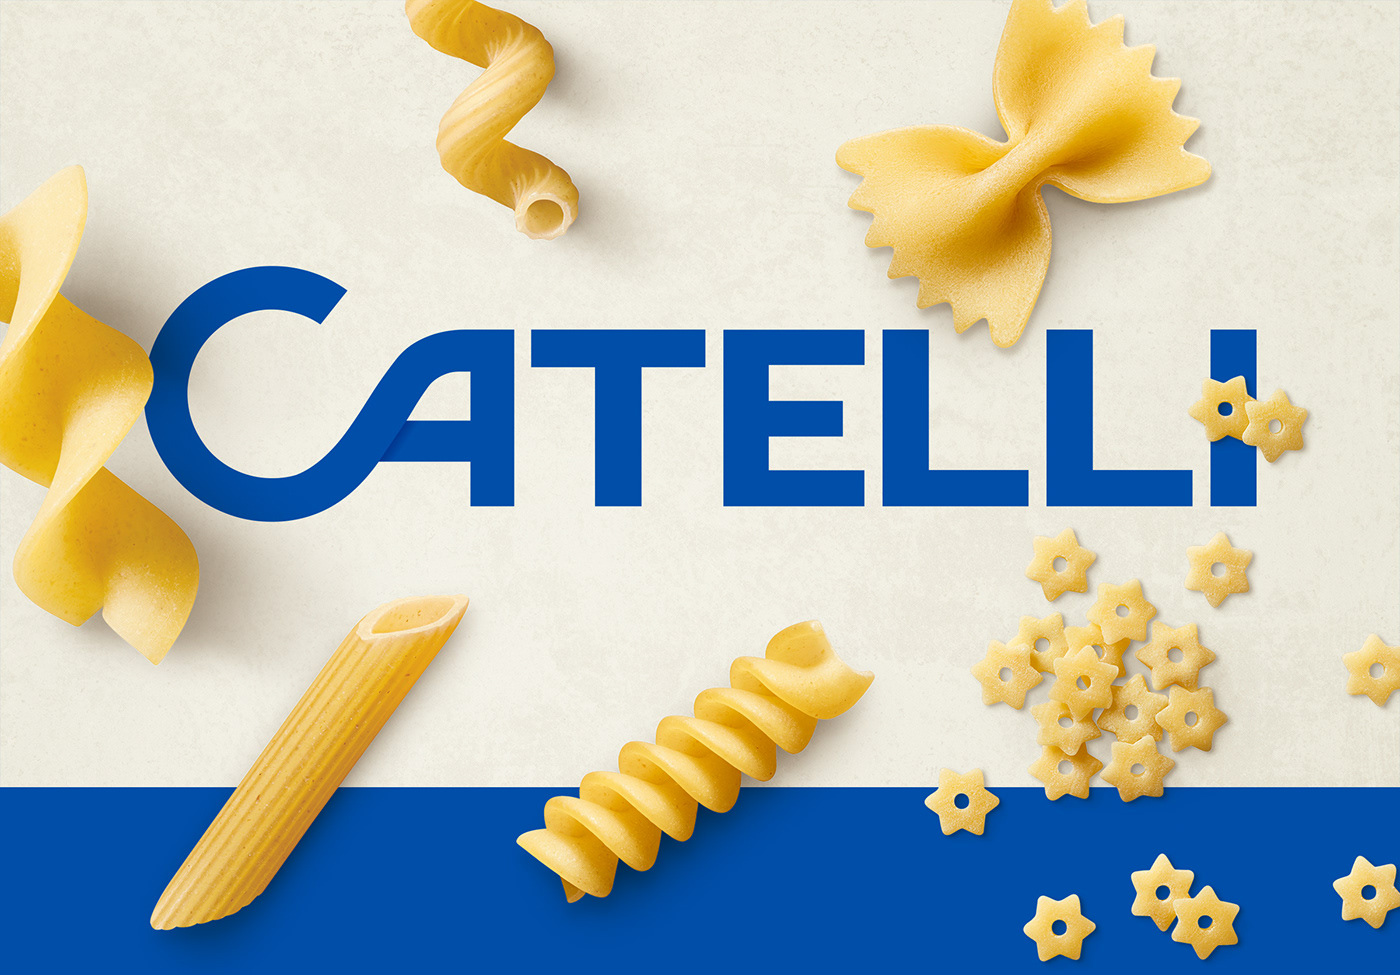 Catelli意大利面品牌包装设计